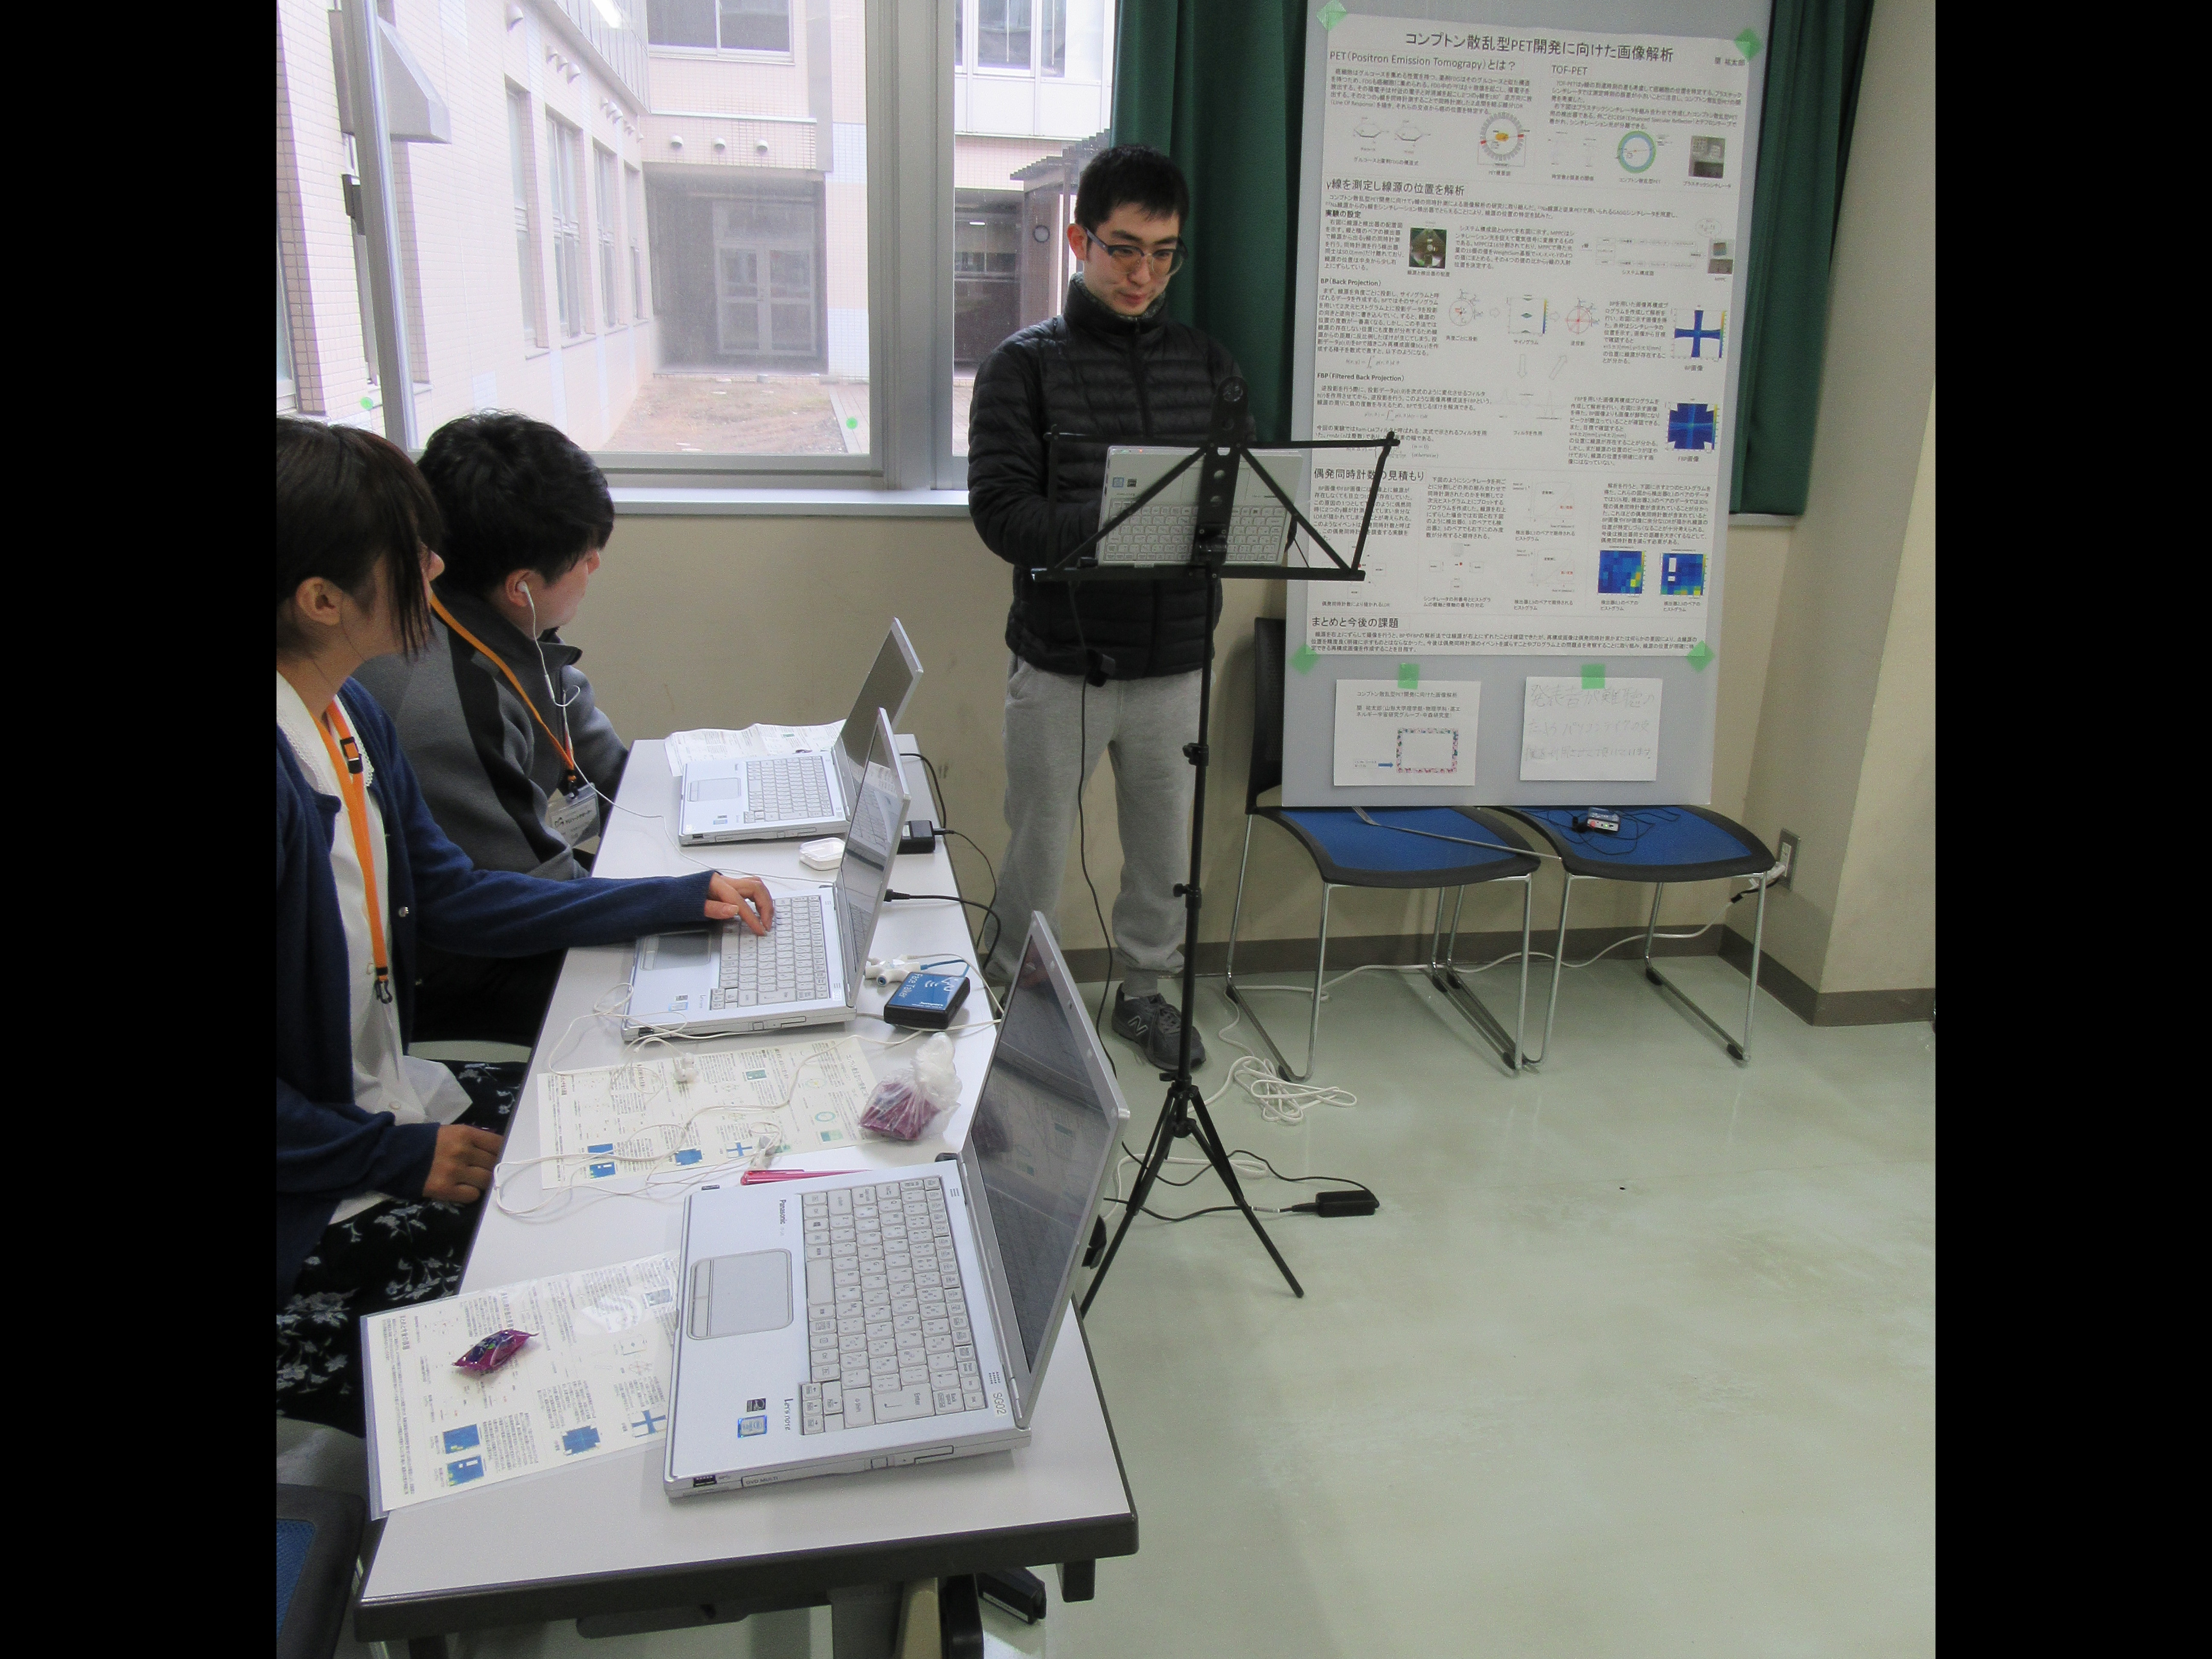 真ん中に聴覚障がい学生が立っておりその左隣に支援学生が２名いる。支援学生の前にはパソコンが置かれている。